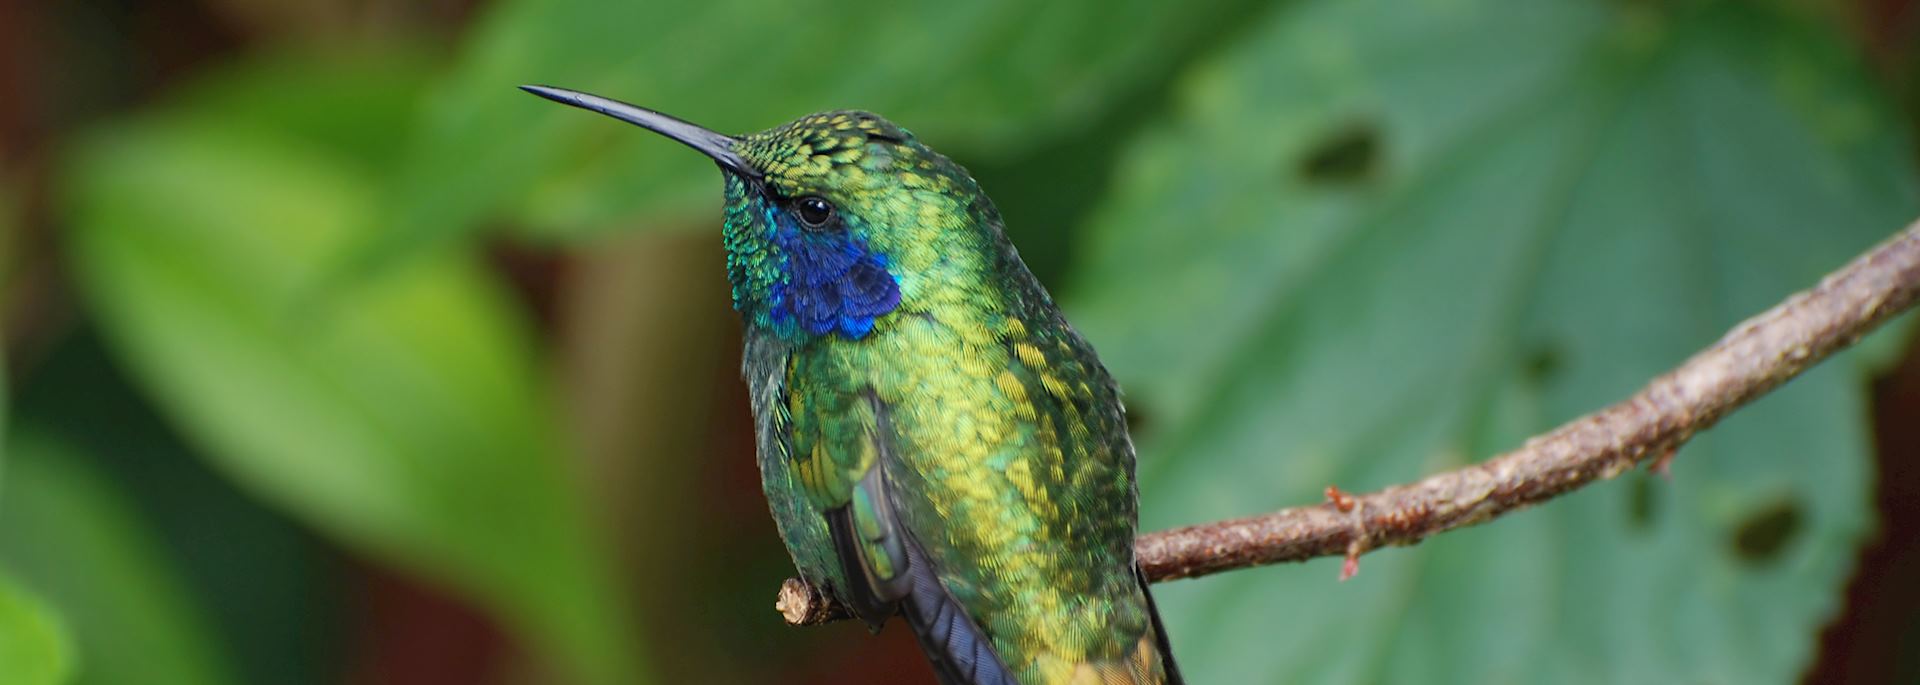 Hummingbird in Monteverde Cloud Forest Reserve